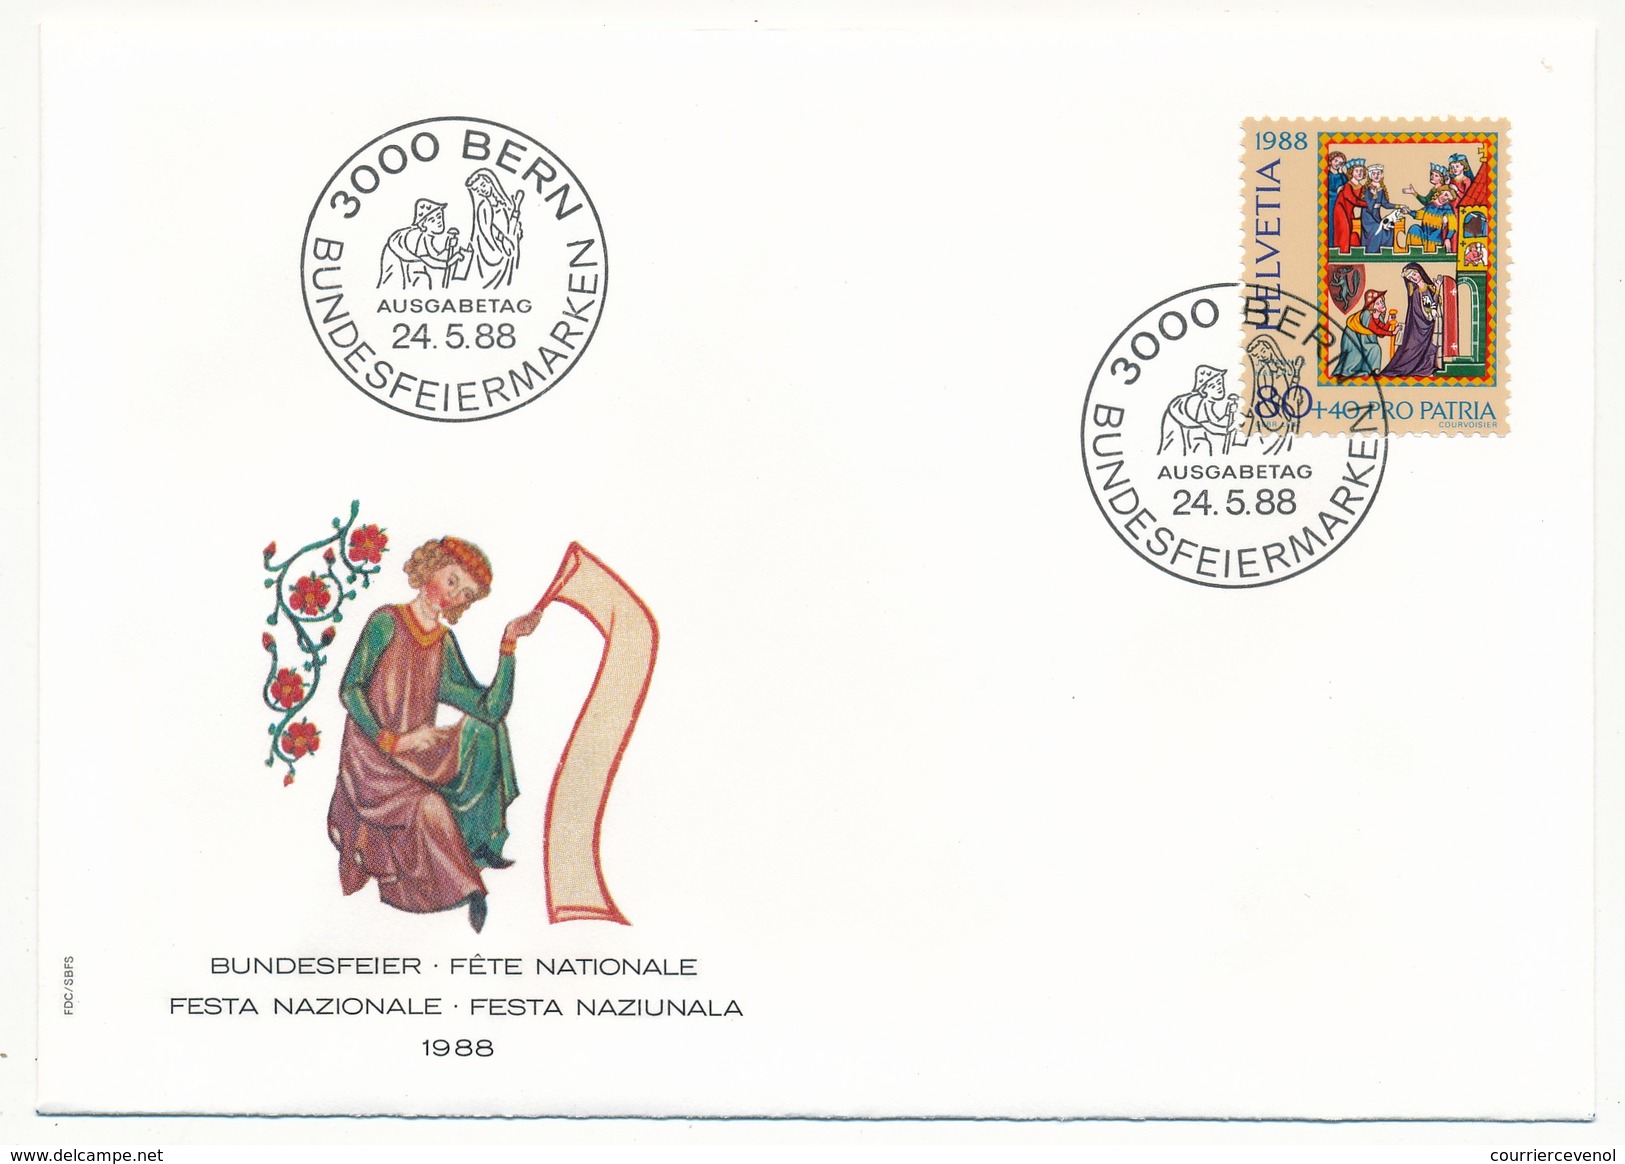 SUISSE - 5 Enveloppes FDC - Fête Nationale 1988 (Pro Patria) - BERN 24/5/1988 - Officials